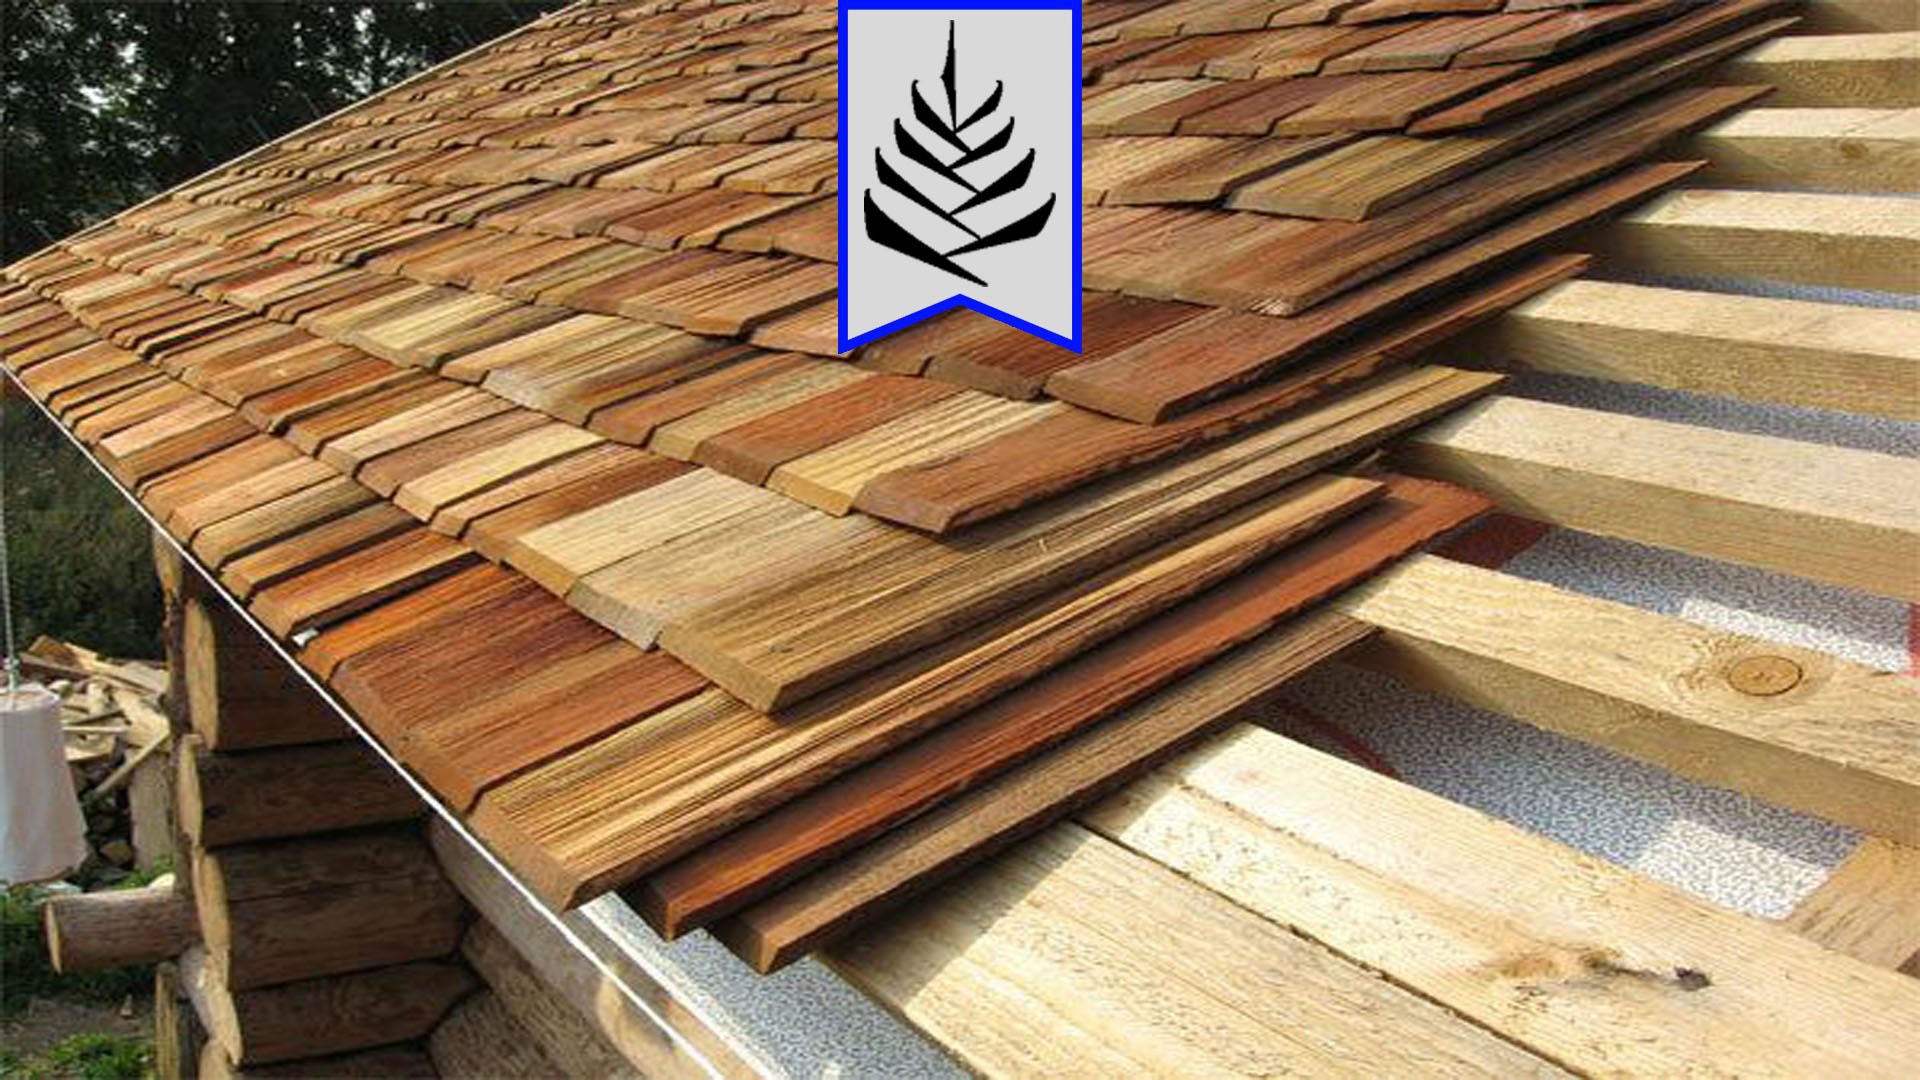 رنگ مخصوص چوب ترمووود - ترمو وود - رنگ چوب - ابعاد ترموود - رنگ چوب ترموود ترموترموود - ترموود - چوب ترموود - چوب ترمو - ترموود ایرانی - رنگ ترموود